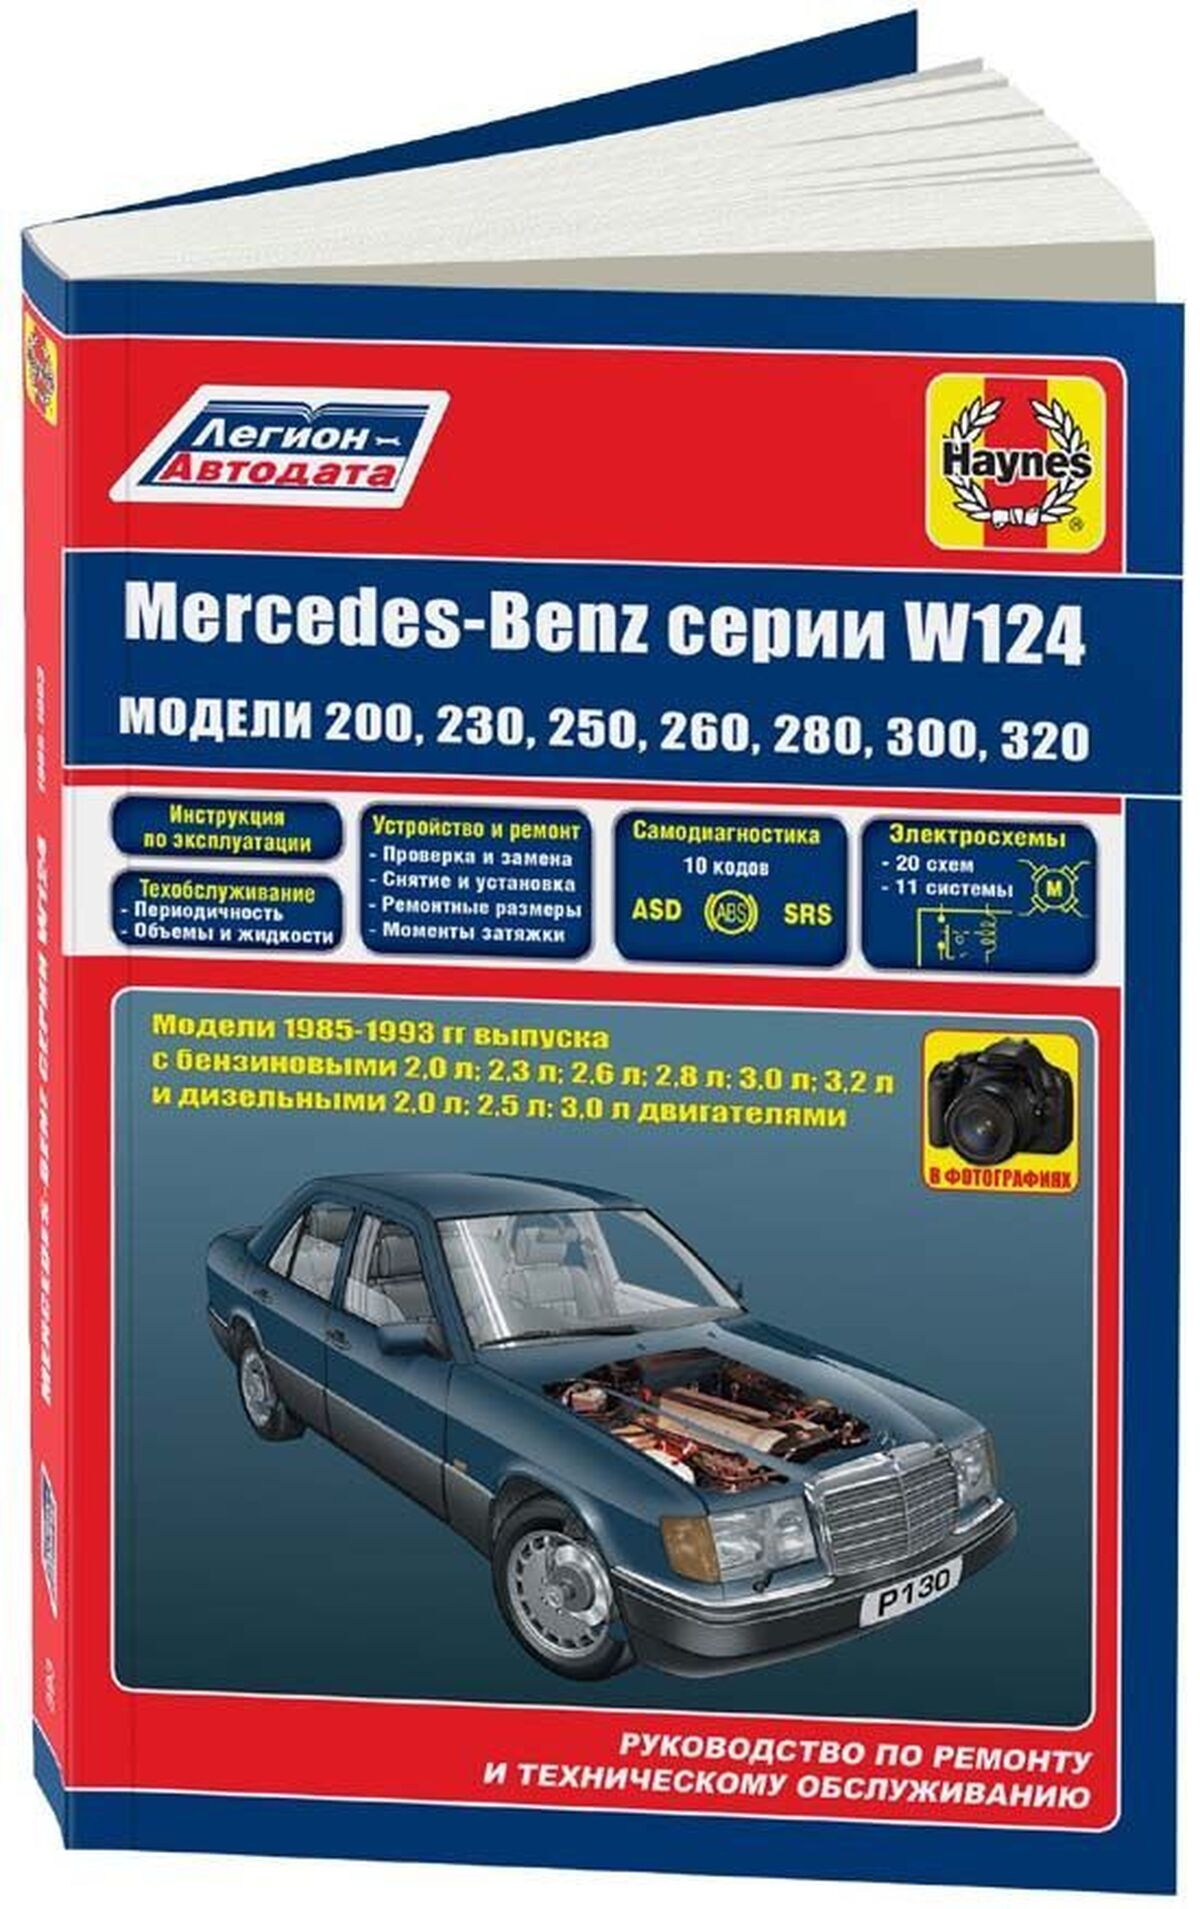 Книга: MERCEDES-BENZ E класс (W-124) (б , д) 1985-1993 г.в., рем., экспл., то | Легион-Aвтодата